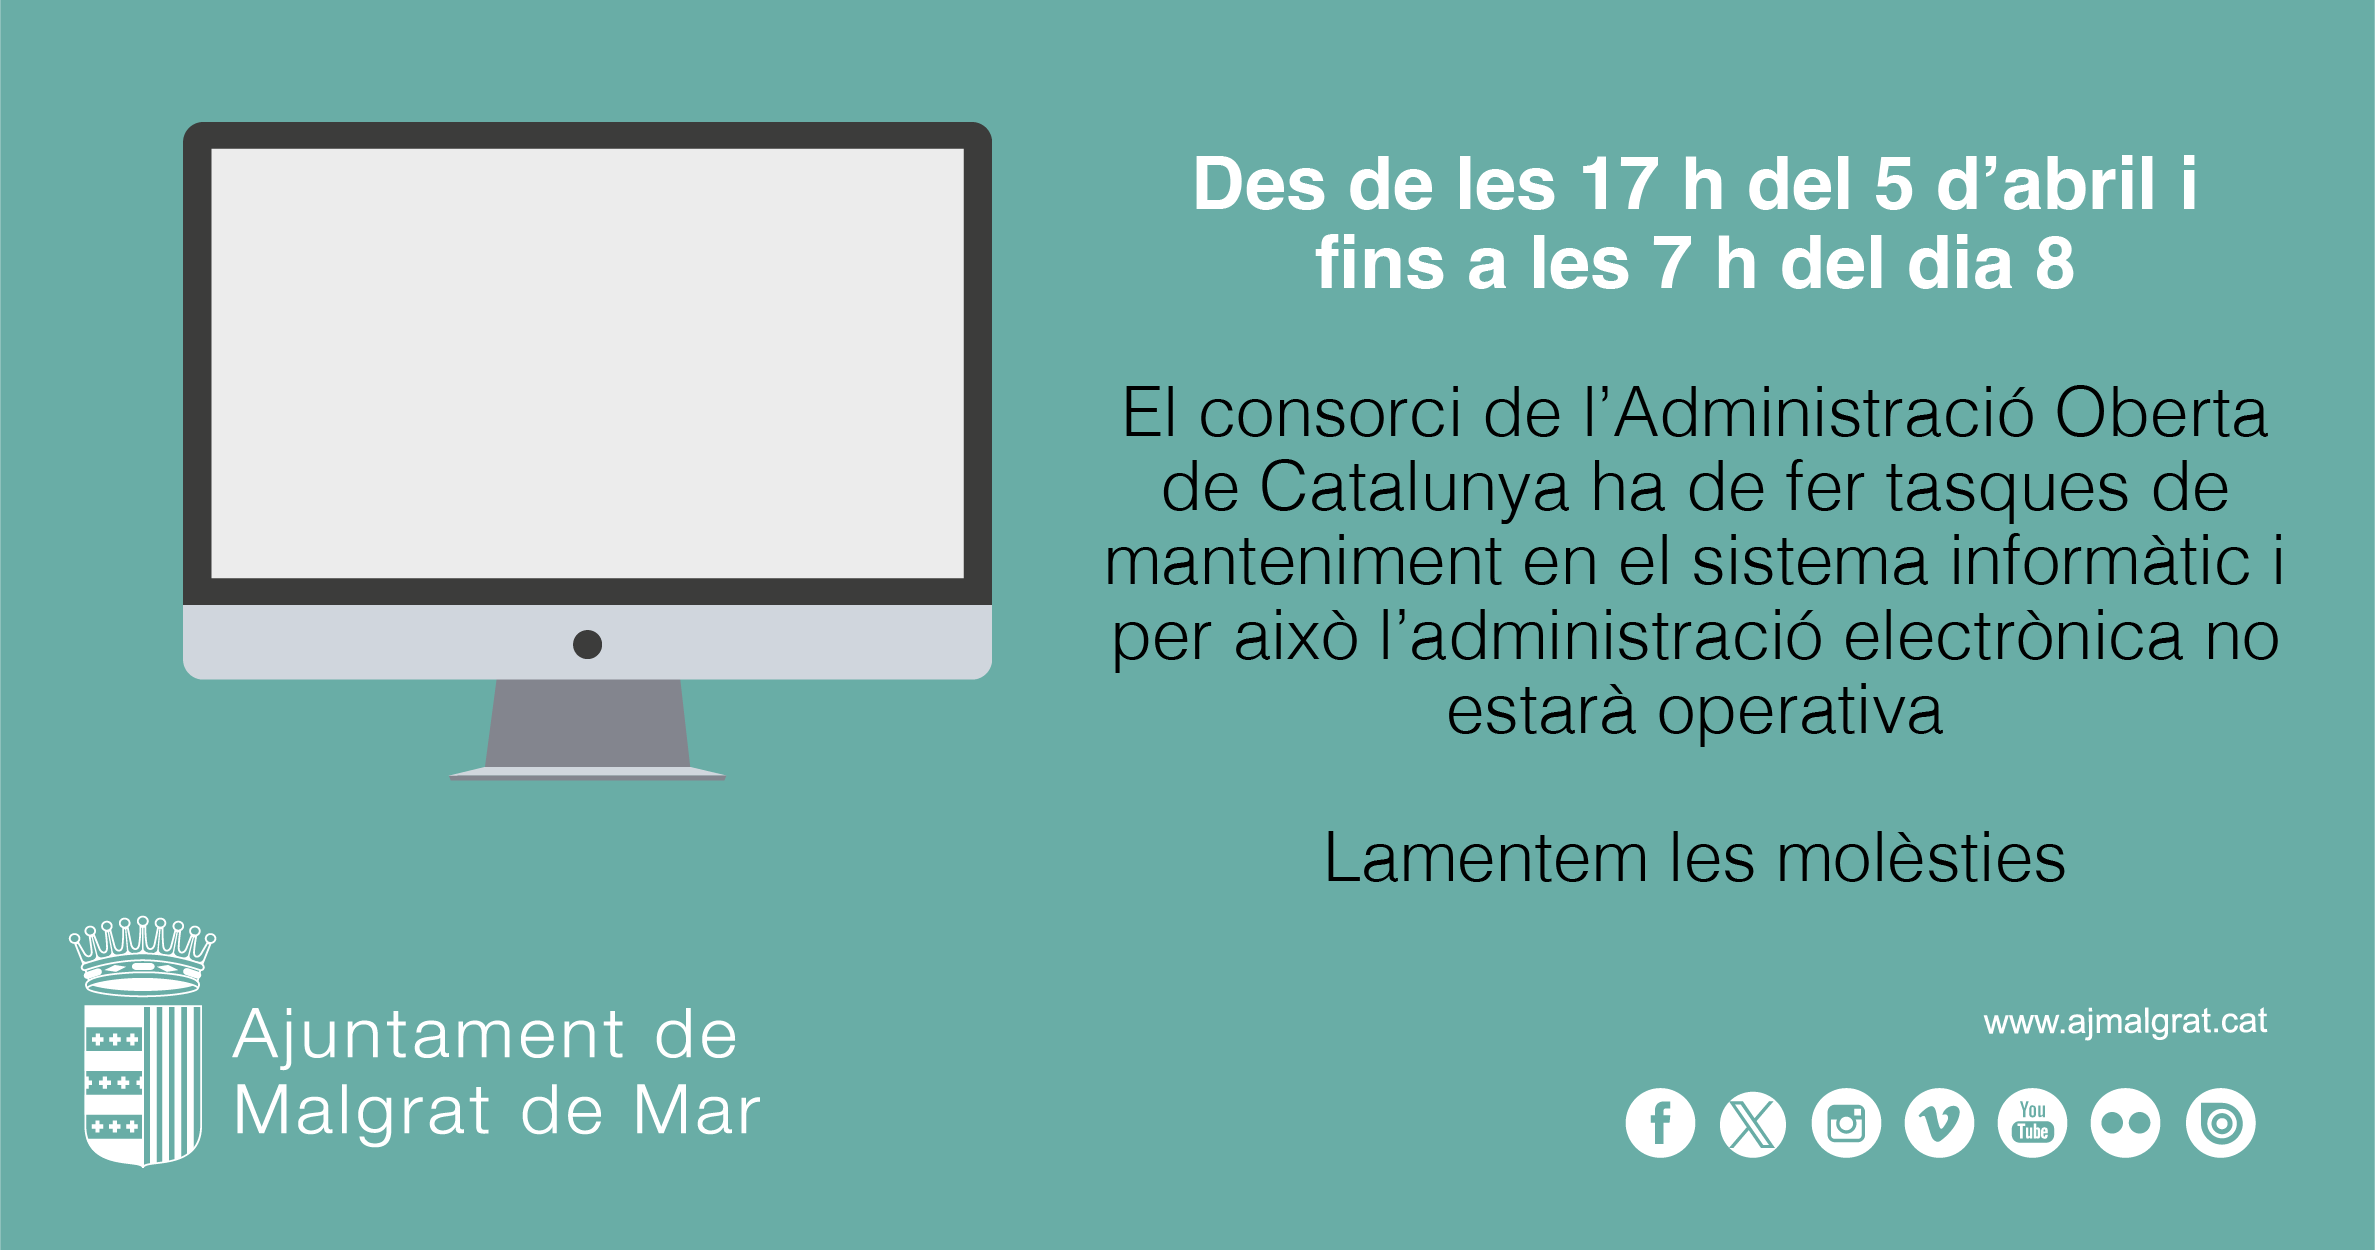 L'administració electrònica no estarà operativa de les 17 h del 5 d'abril fins a les 7 h del dia 8 